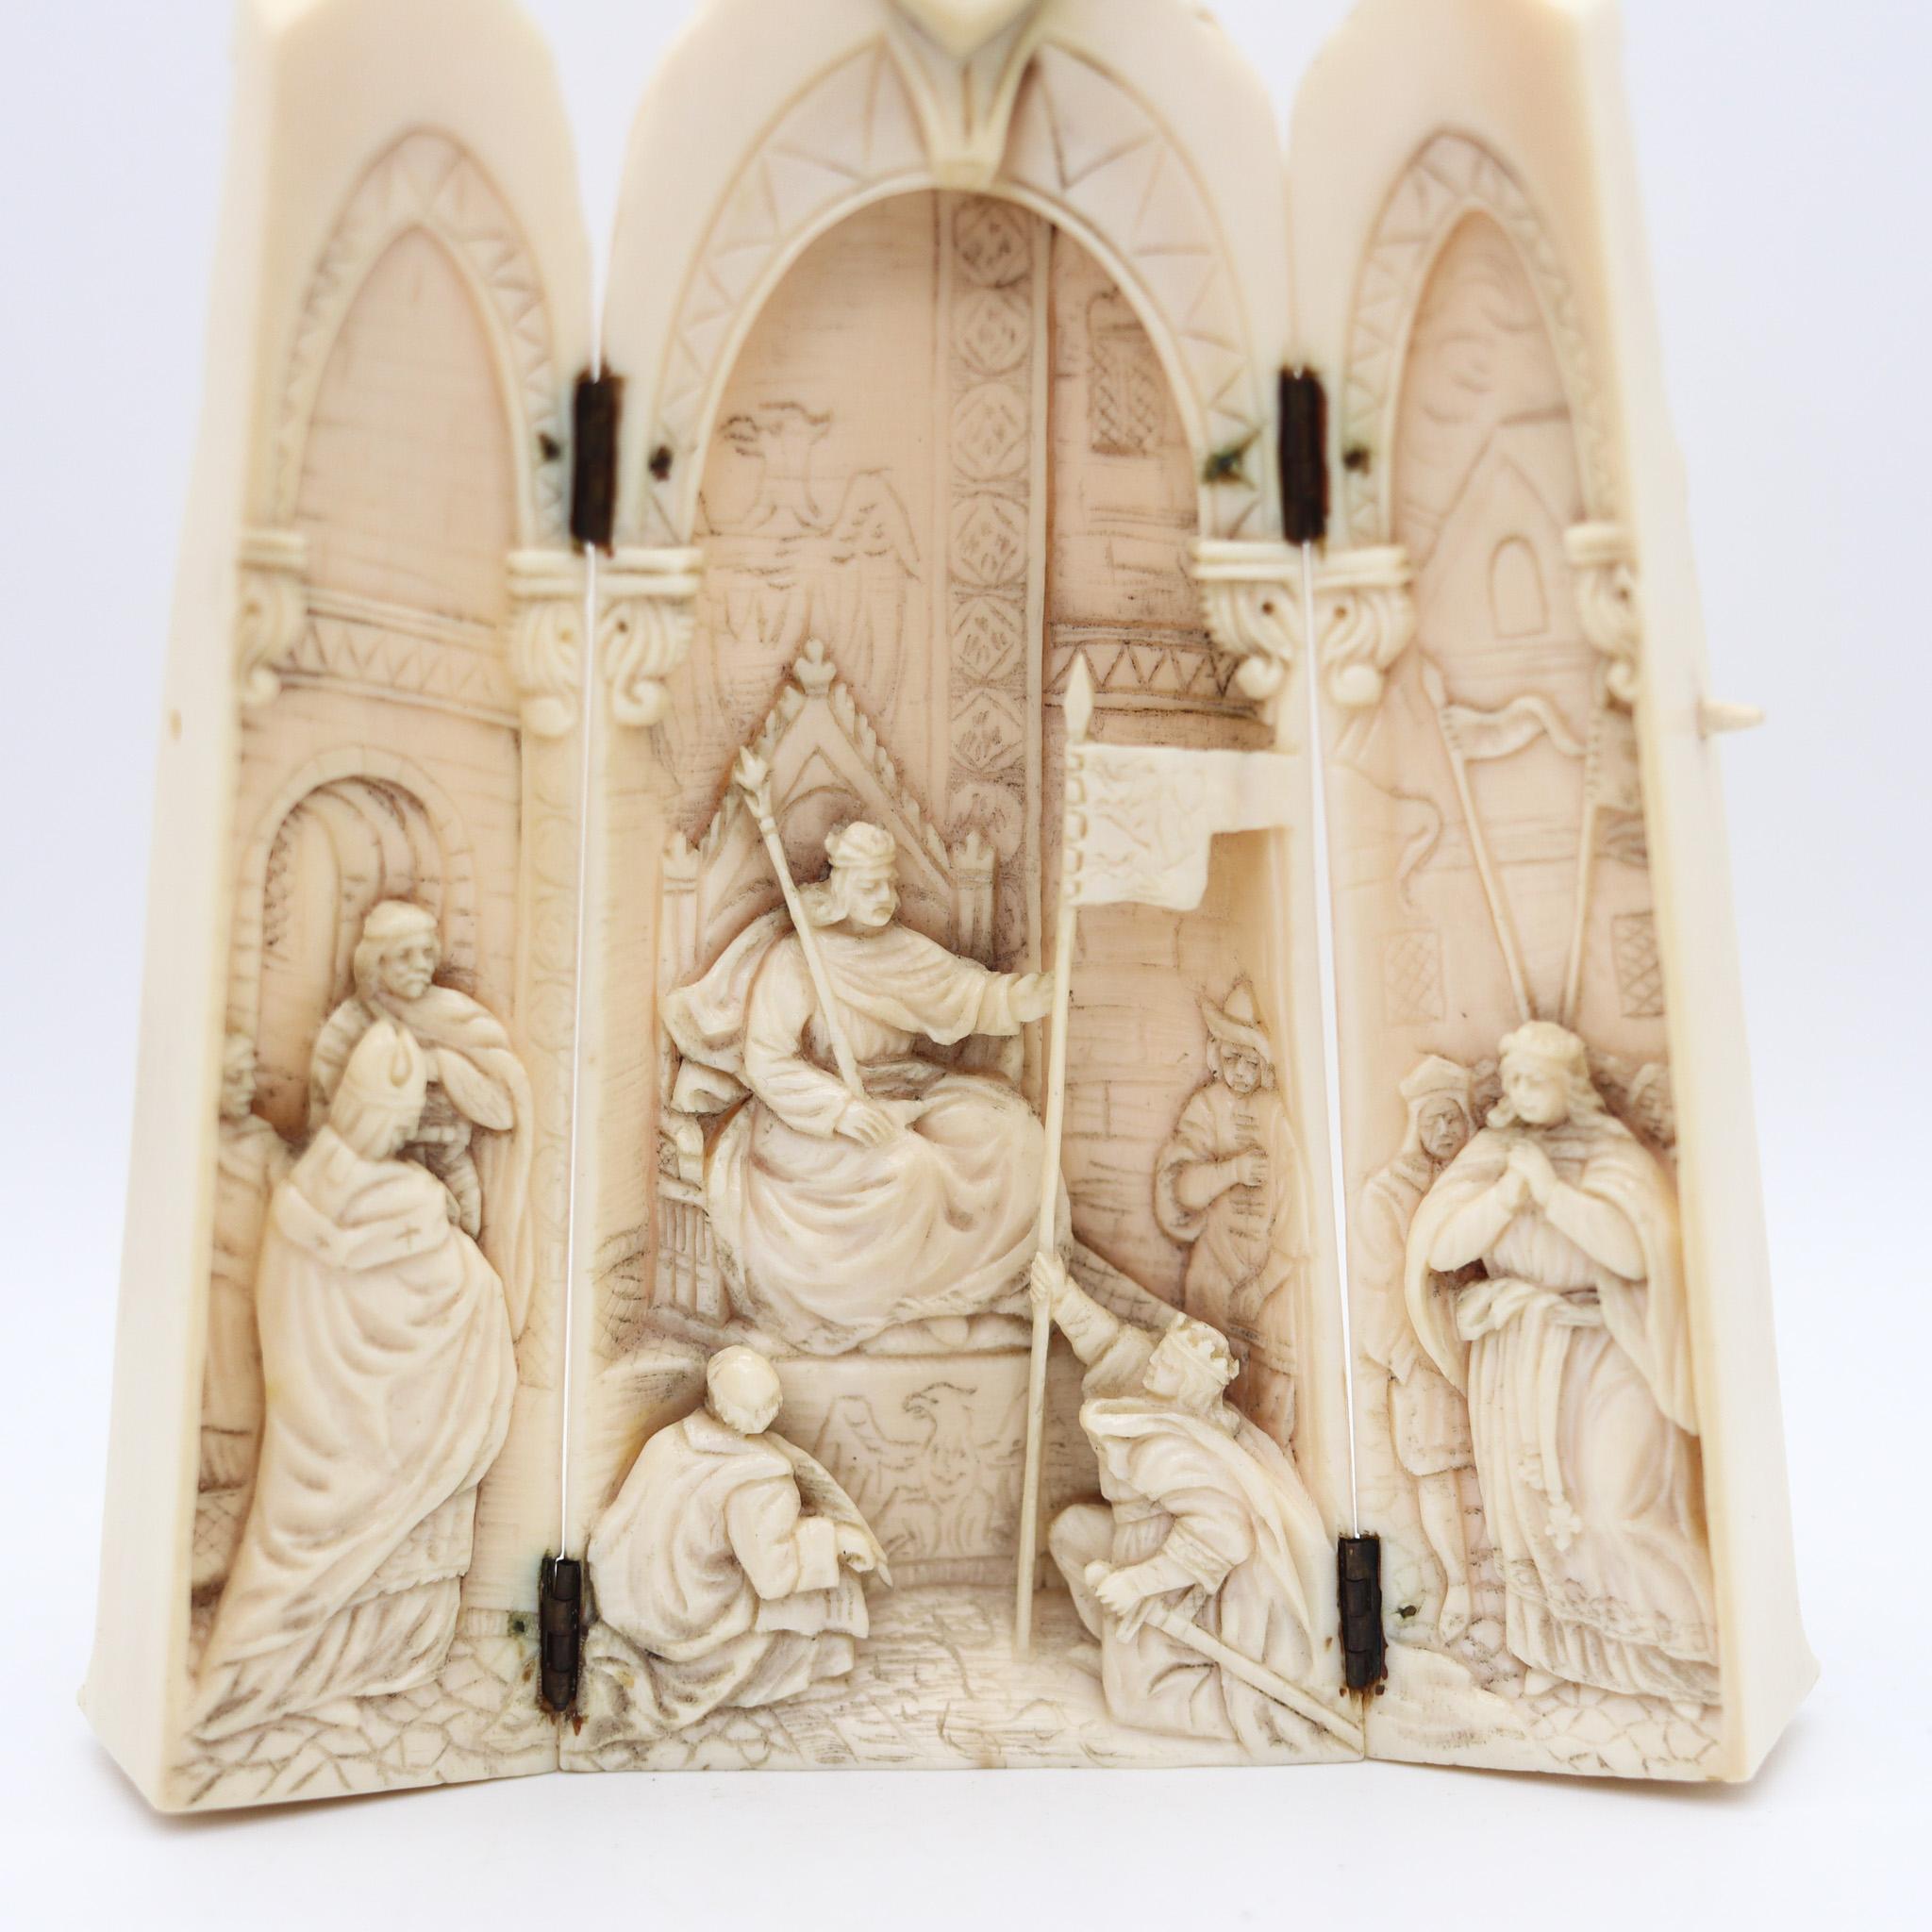 Belge Triptyque de sculpture flamande de 1850 représentant l'empereur Charlemagne trônant en vente